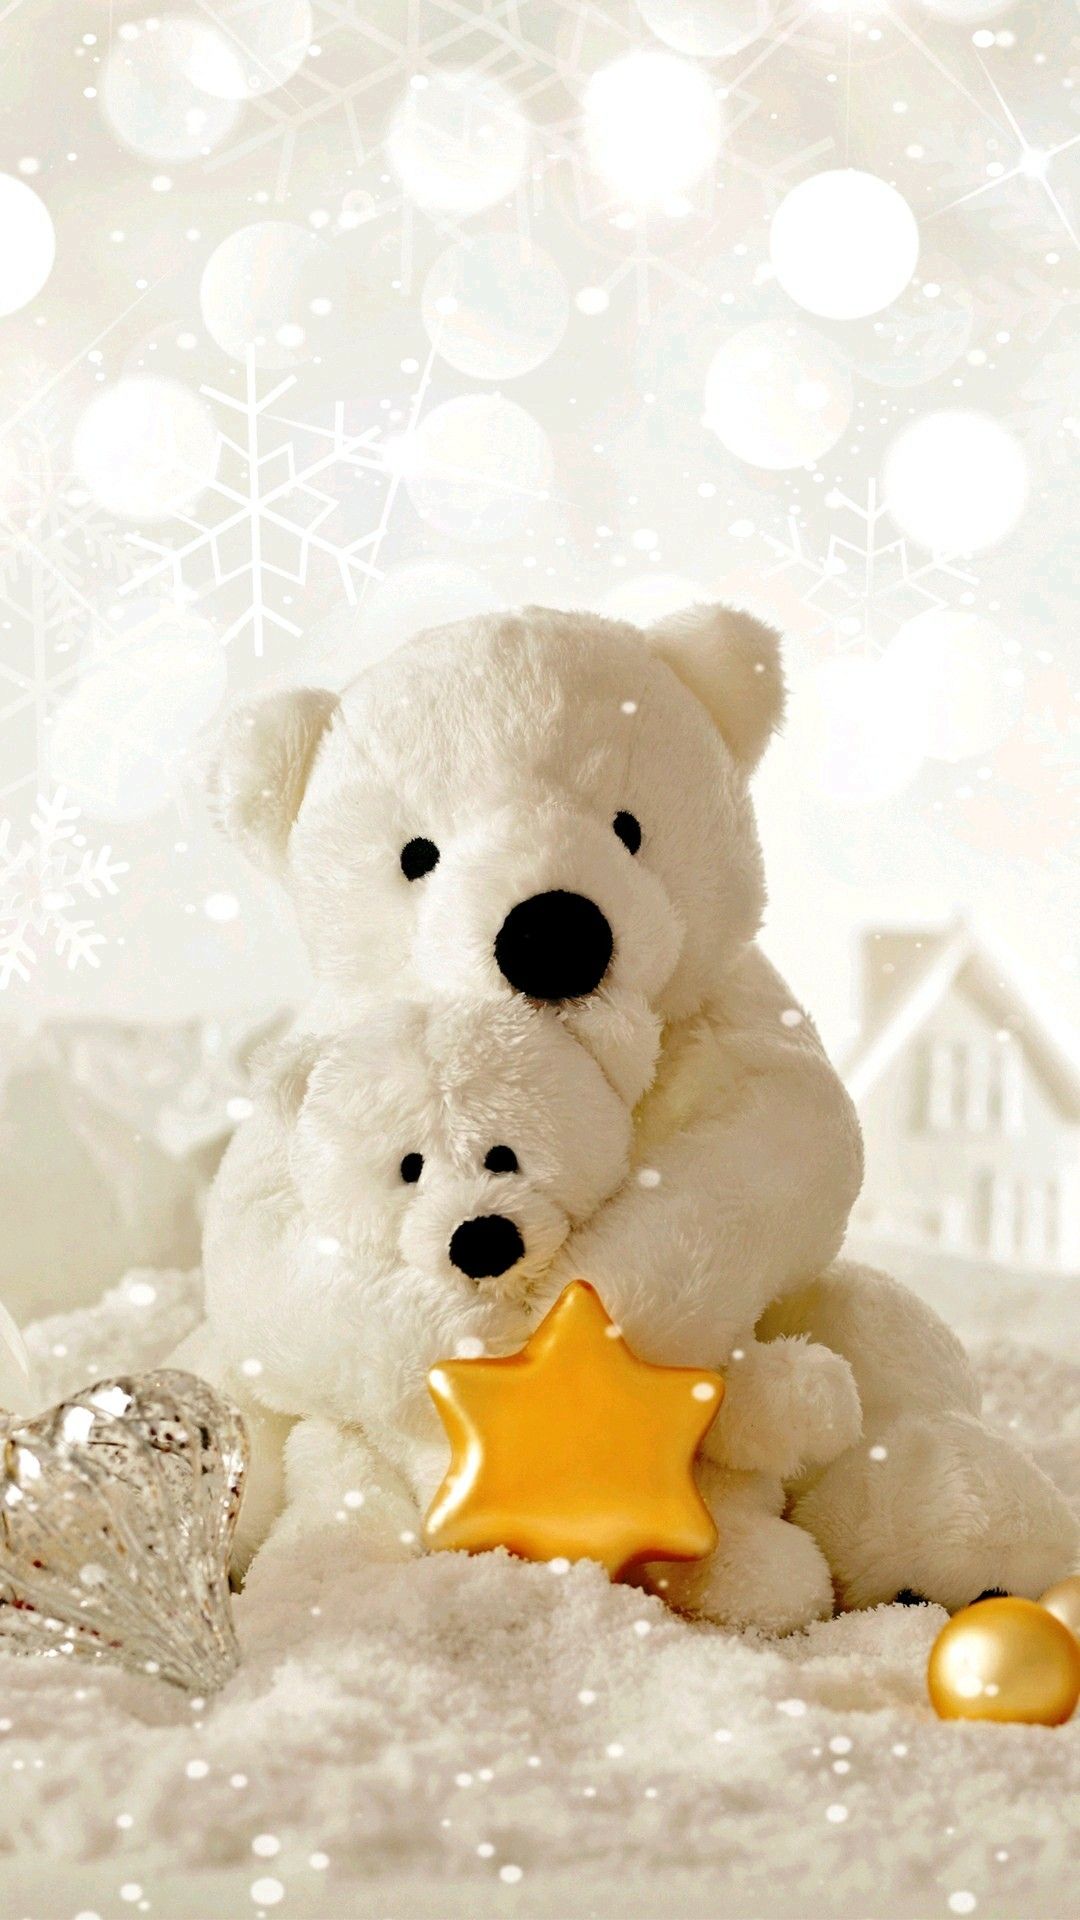 Lovely teddy bears teddy bear wallpaper teddy bear images teddy bear